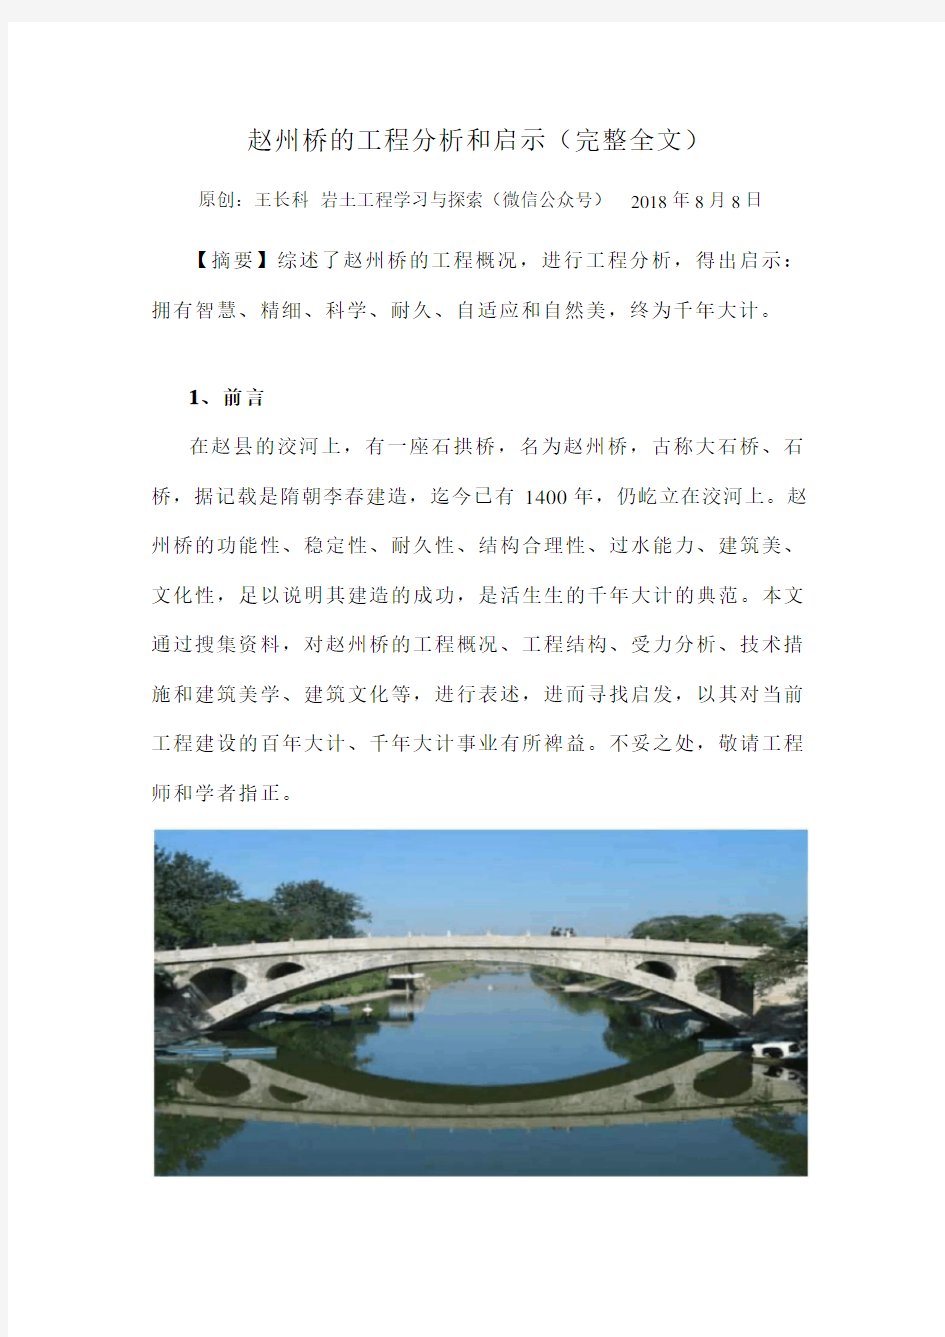 赵州桥的工程分析和启示(王长科原创)